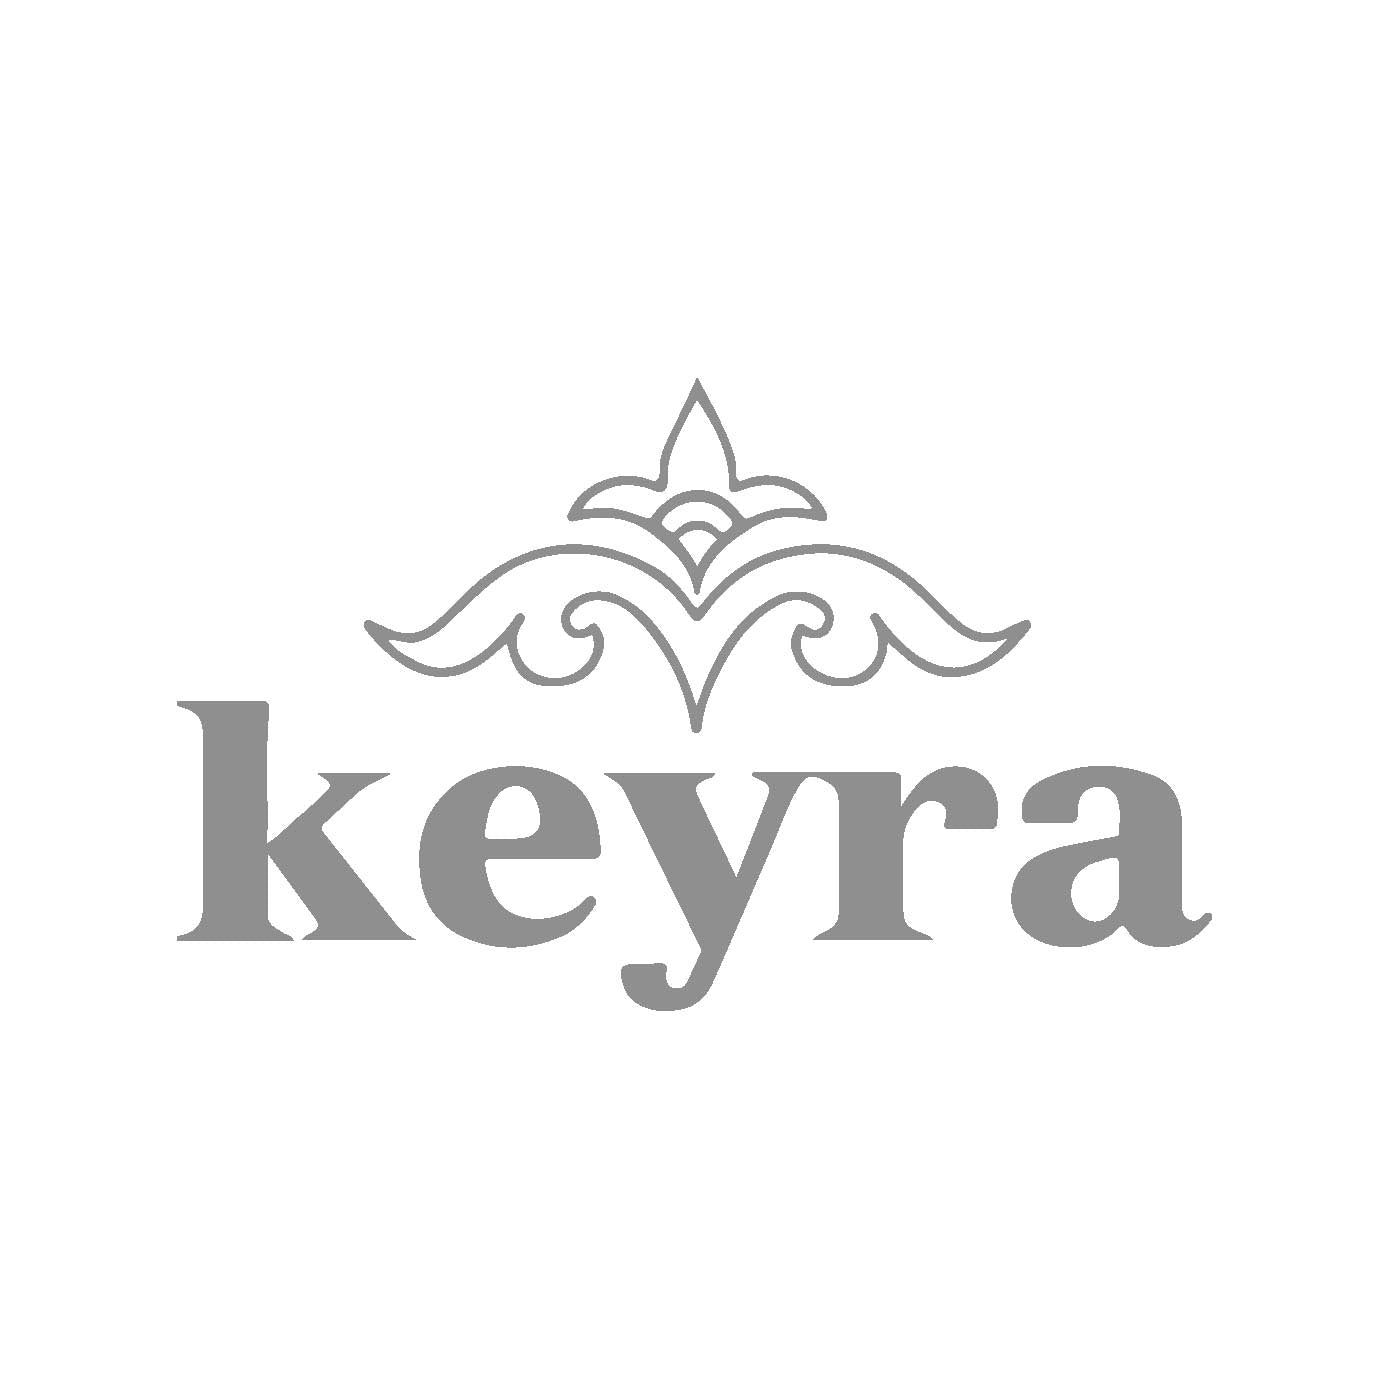 Keyra Skincare